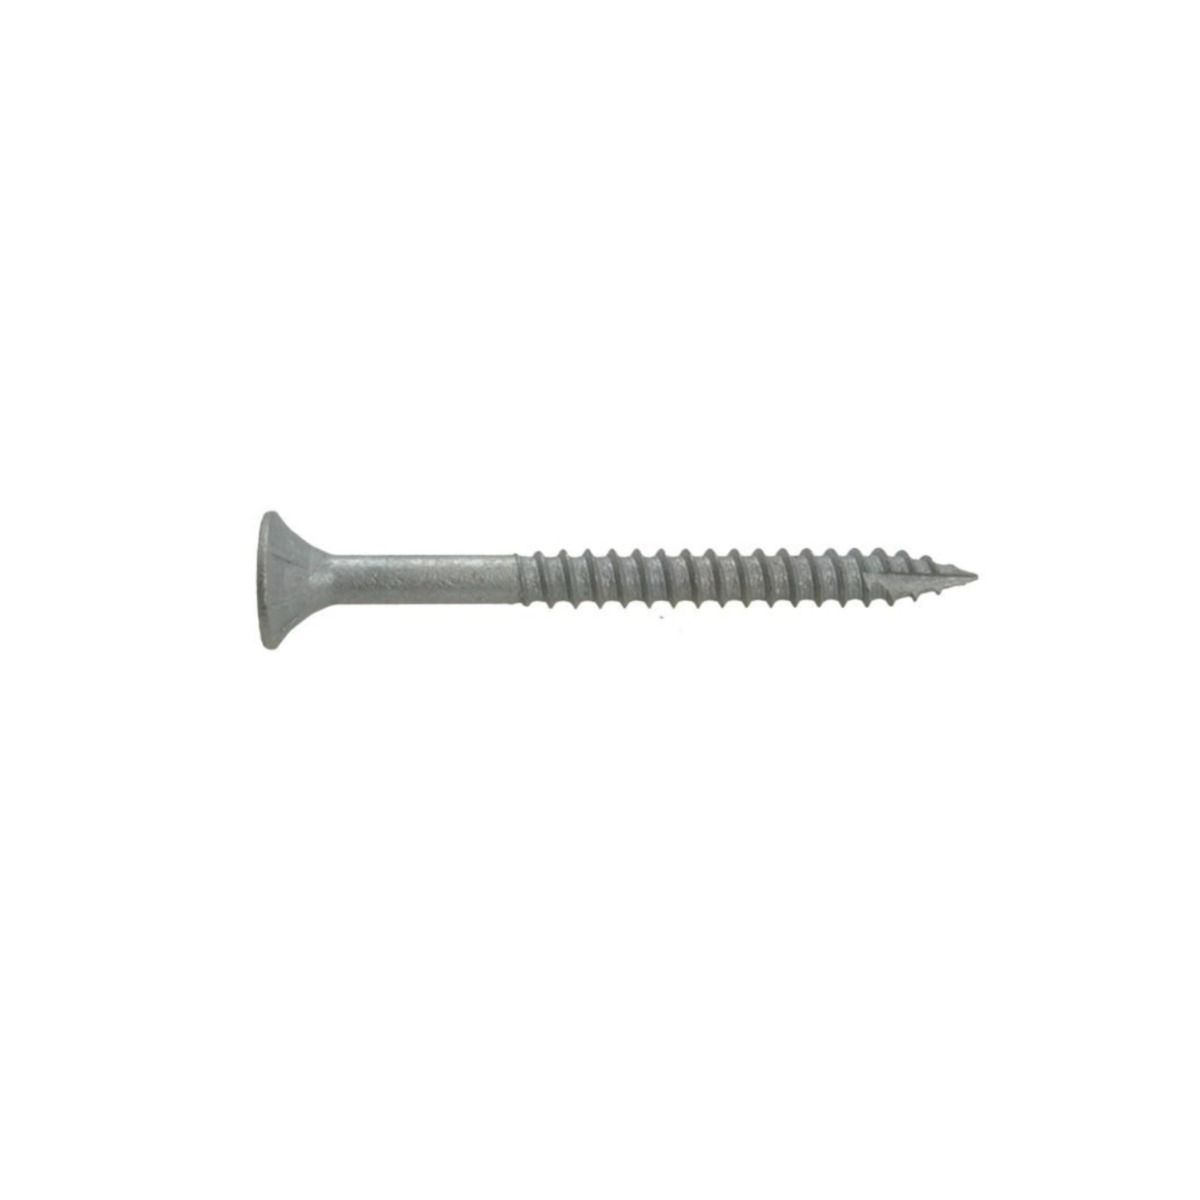 Intex MegaFix® Nails Batten Screw 50 x 3.15 x 2.5kg